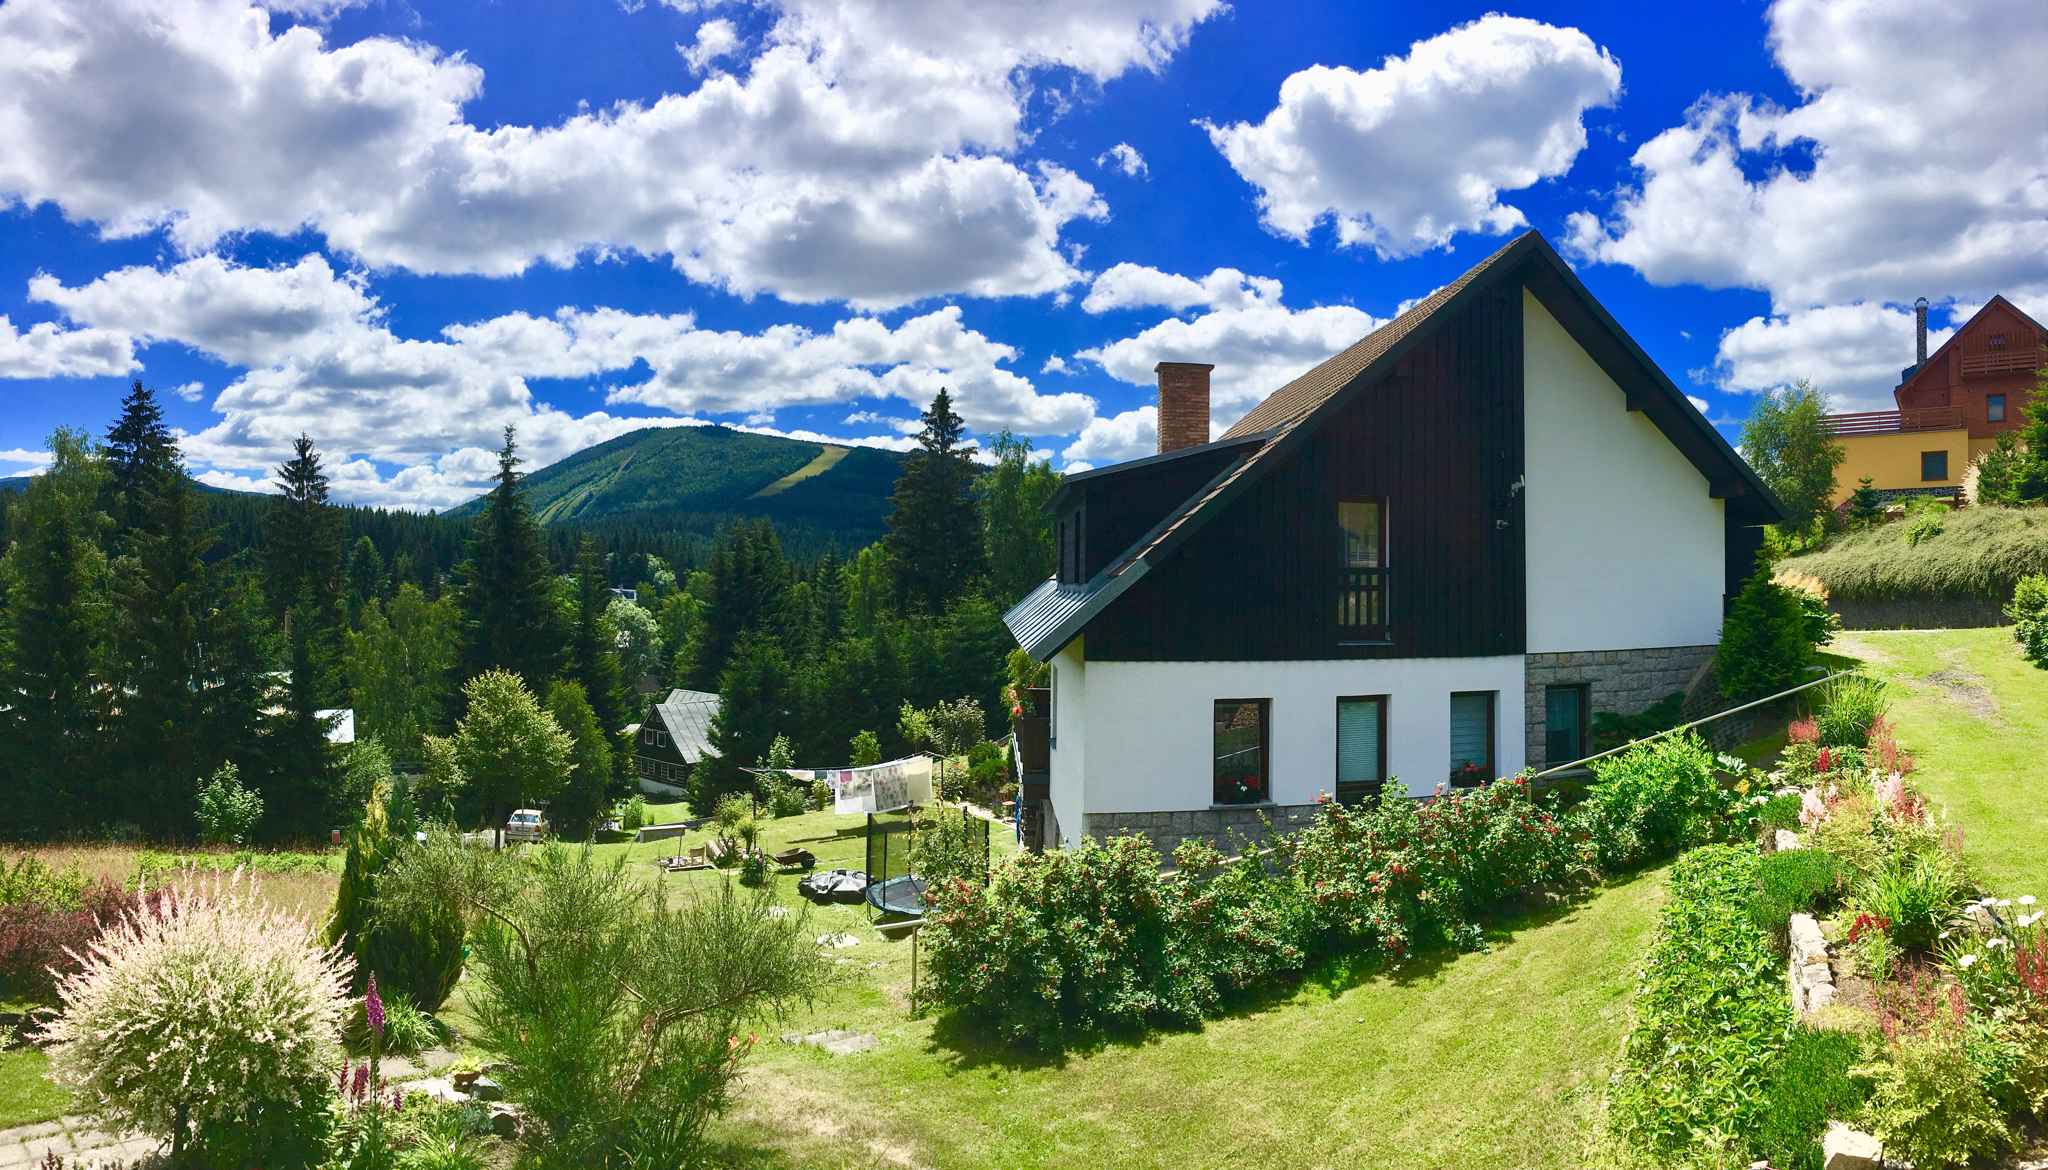 Ferienwohnung mit Balkon am Hang   Riesengebirge CZ